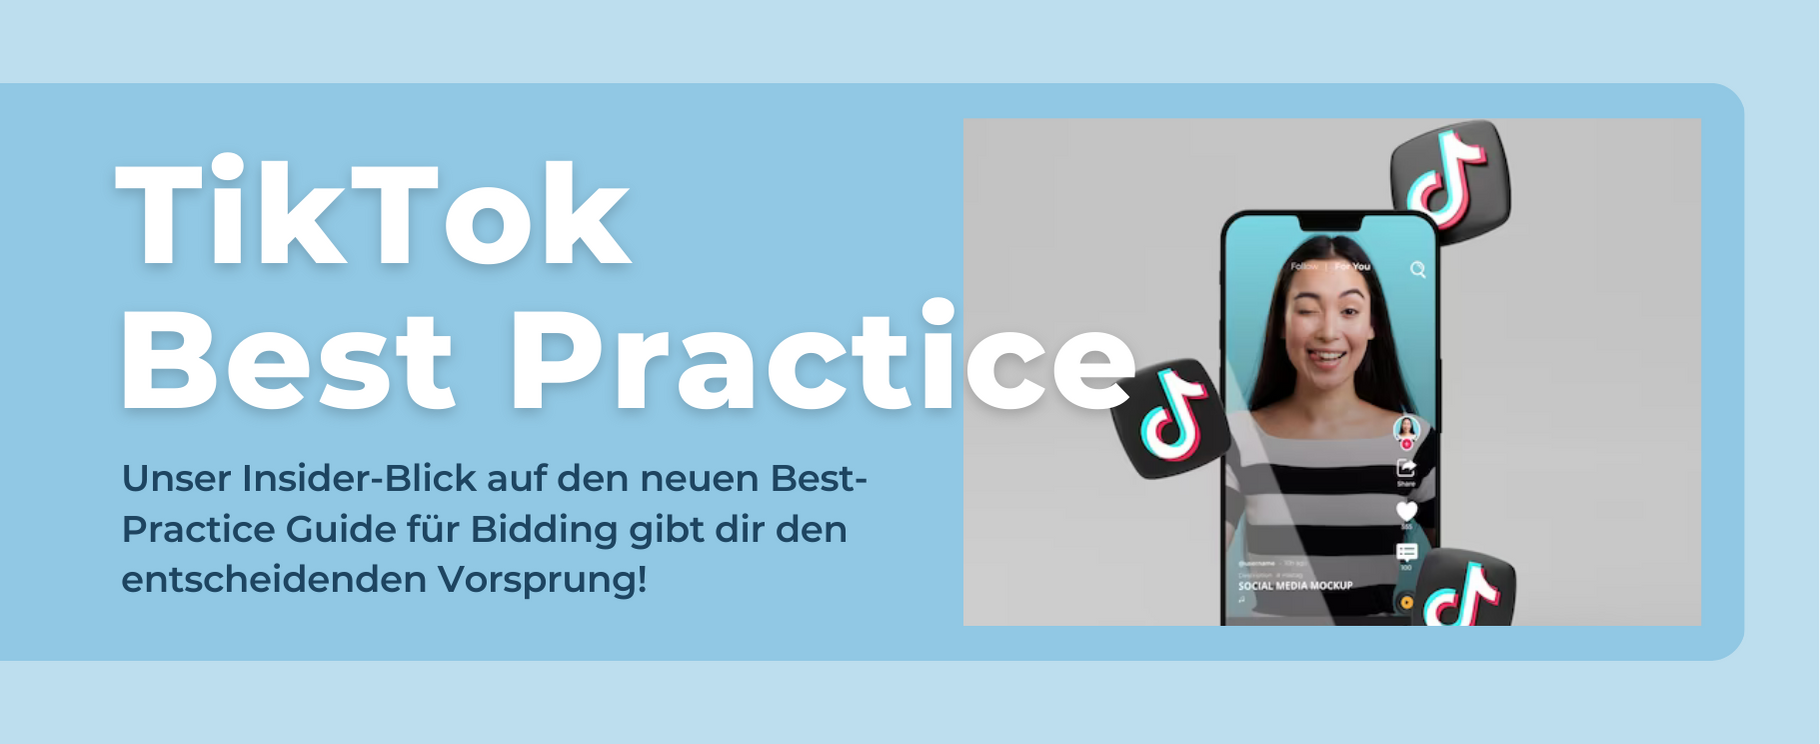 TikTok Best Practice Guide für Online-Marketing